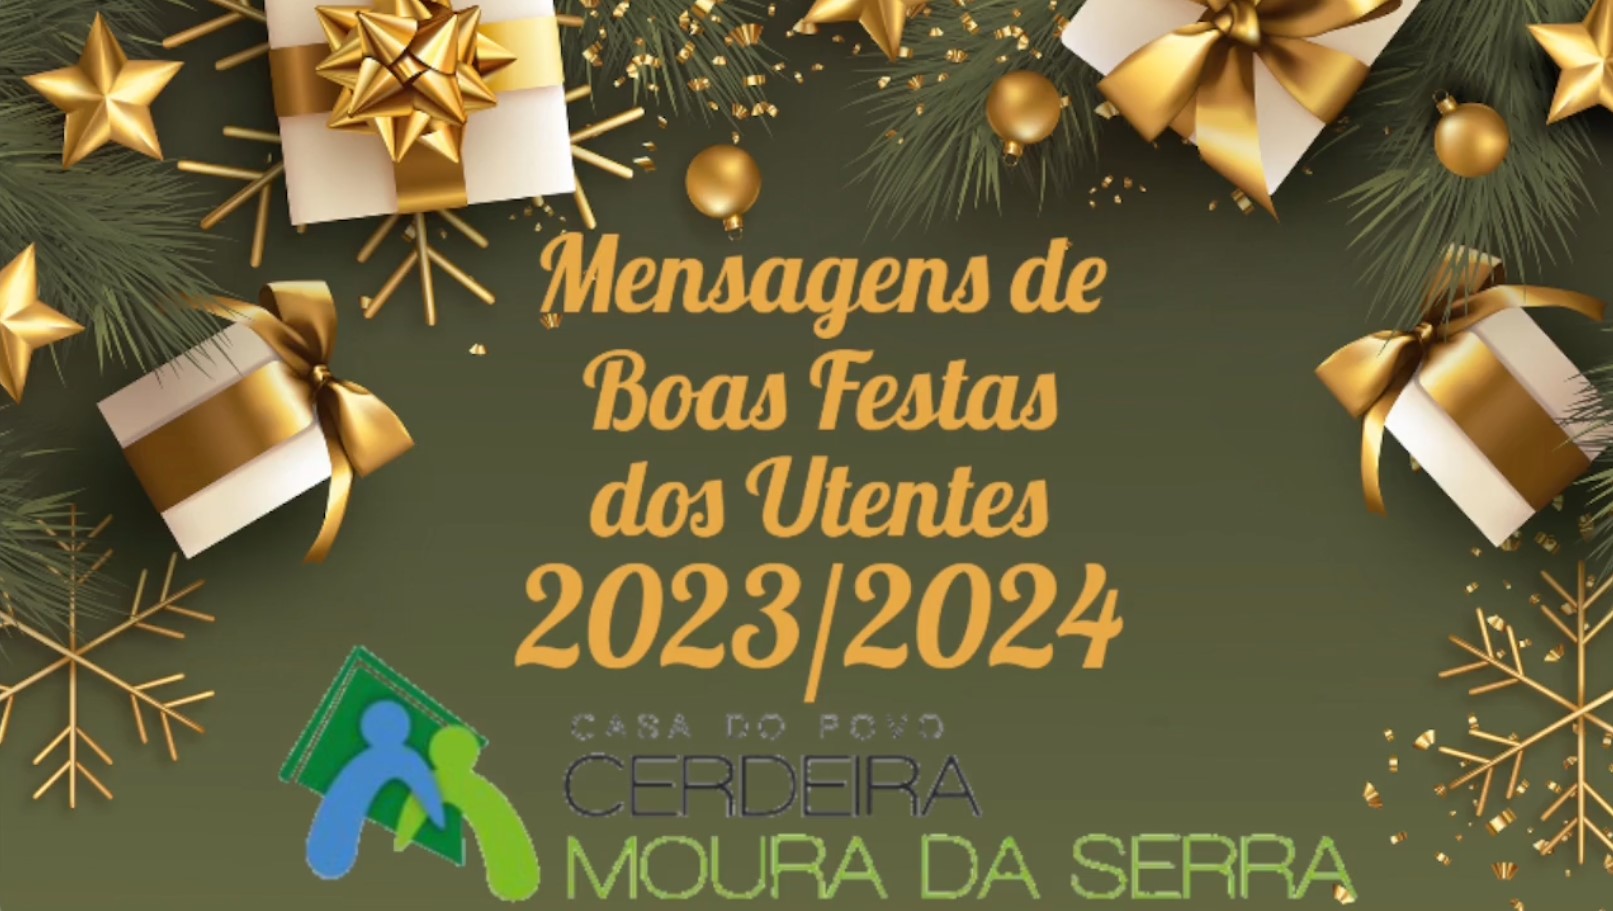 Casa do Povo de Cerdeira e Moura da Serra, I.P.S.S. – Vídeo de Boas Festas 2023/2024 dos nossos Utentes\Residentes